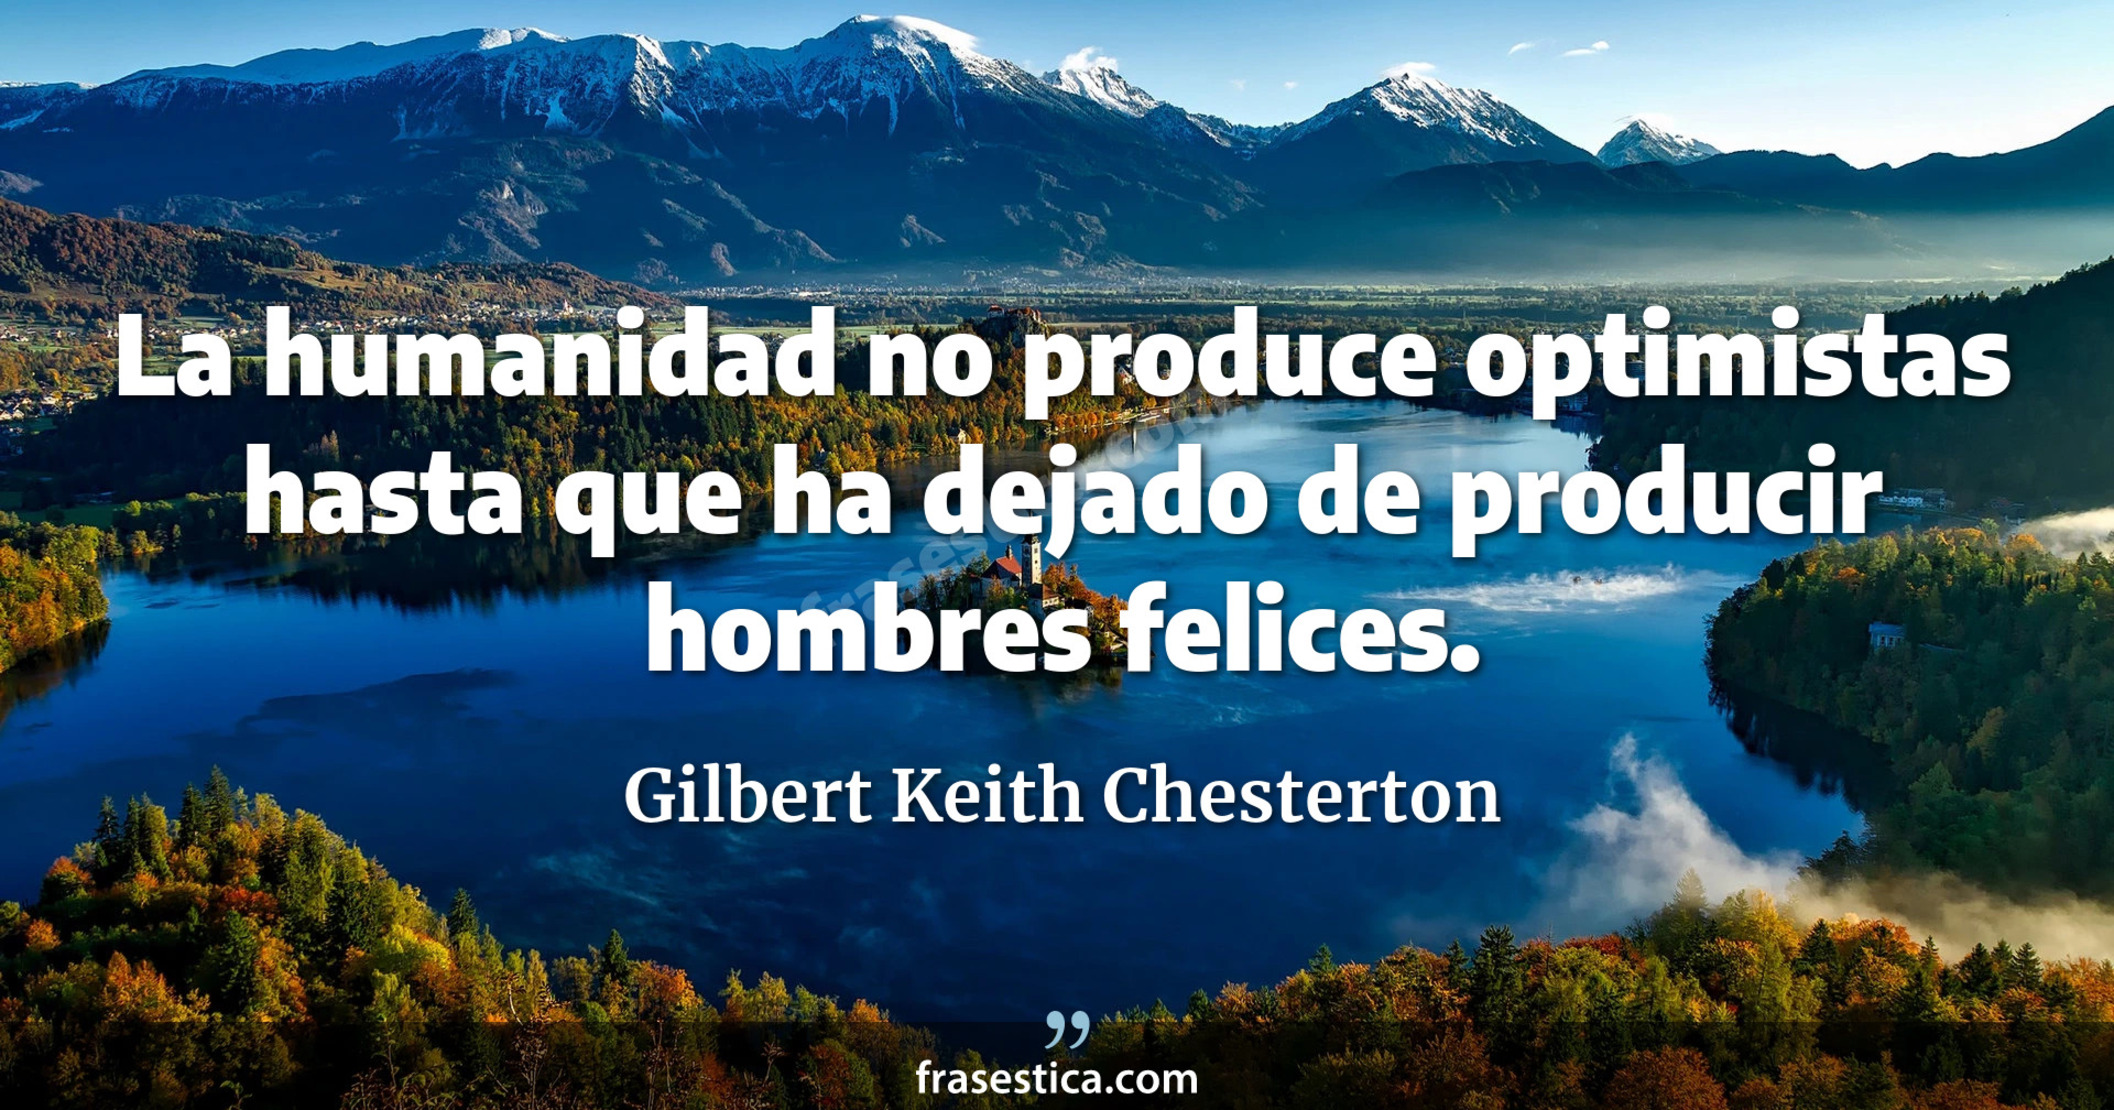 La humanidad no produce optimistas hasta que ha dejado de producir hombres felices. - Gilbert Keith Chesterton